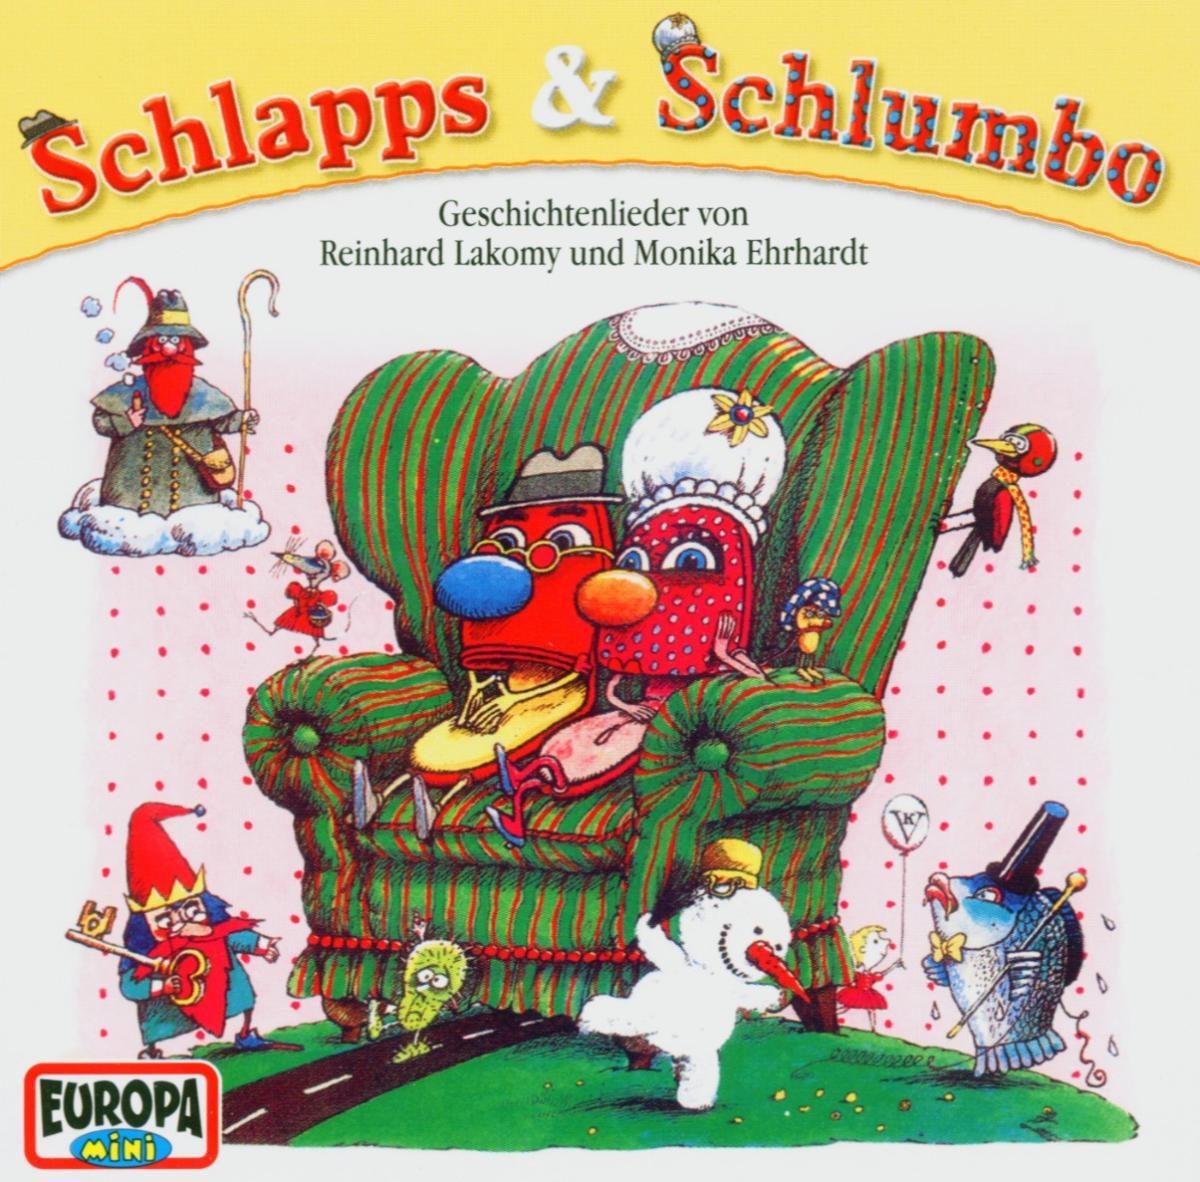 Schlapps Und Schlumbo - Reinhard Lakomy. (CD)